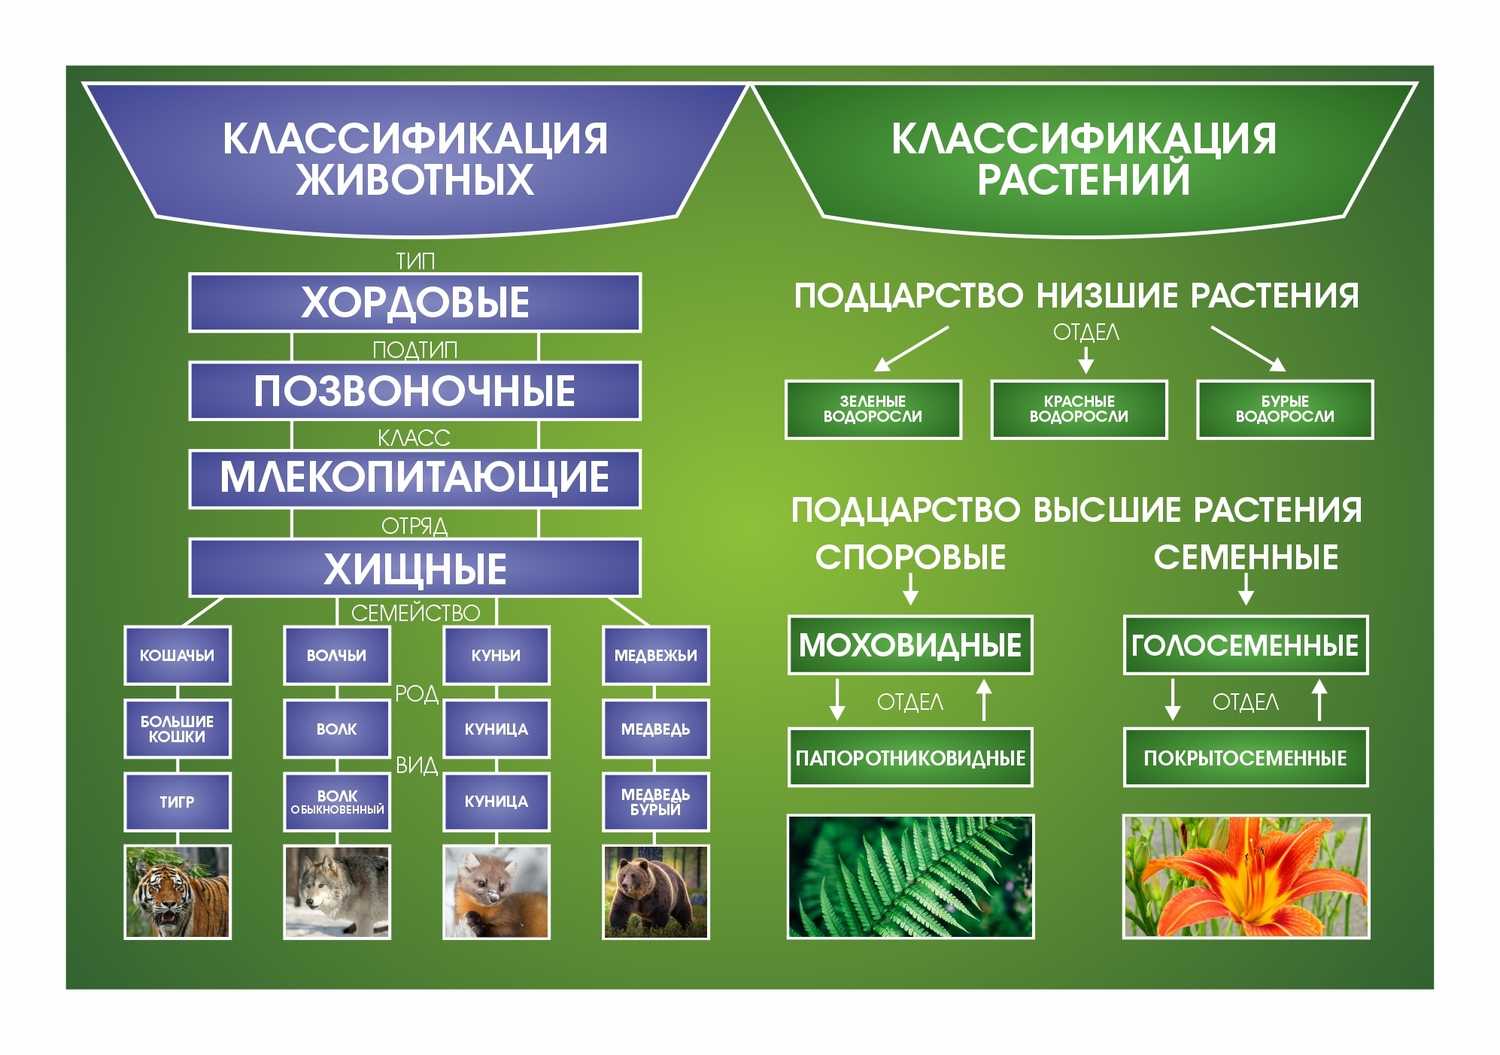 Популяционная структура вида, ее определение и основные характеристики